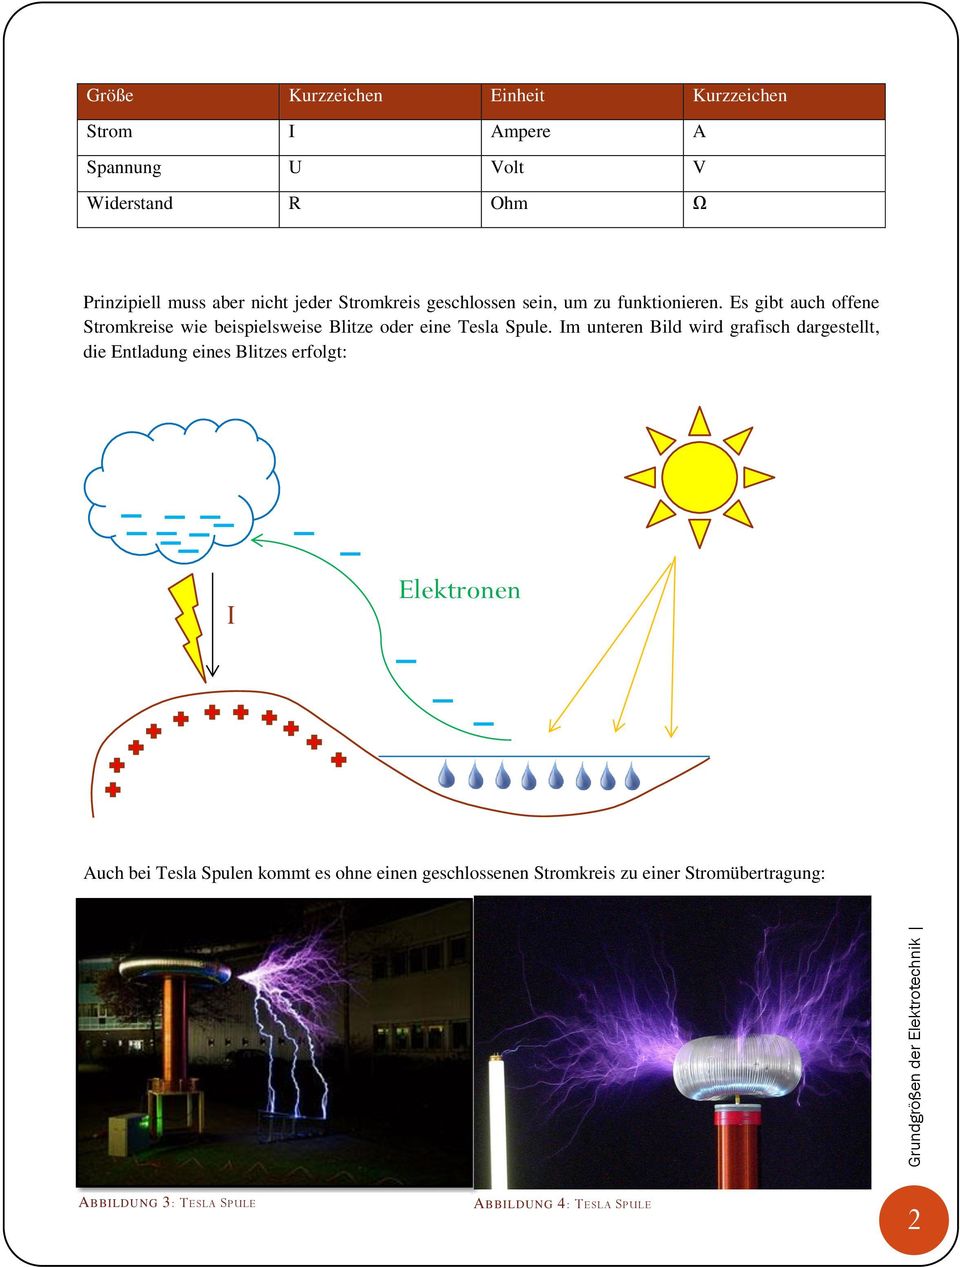 Es gibt auch offene Stromkreise wie beispielsweise Blitze oder eine Tesla Spule.